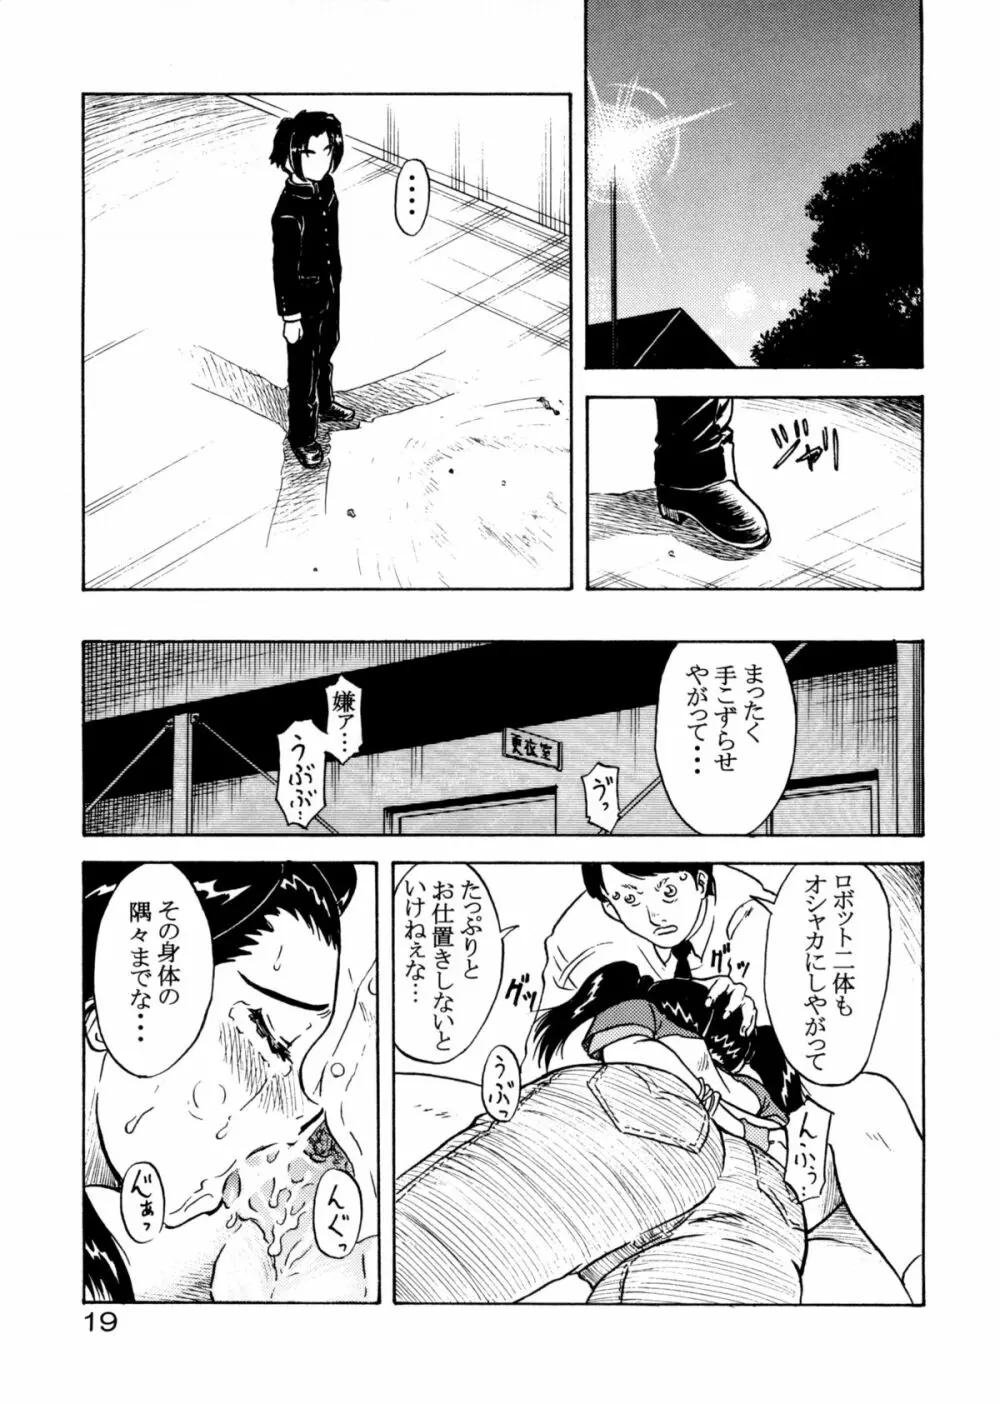 追放覚悟 Special Edition -Phase2- - page18